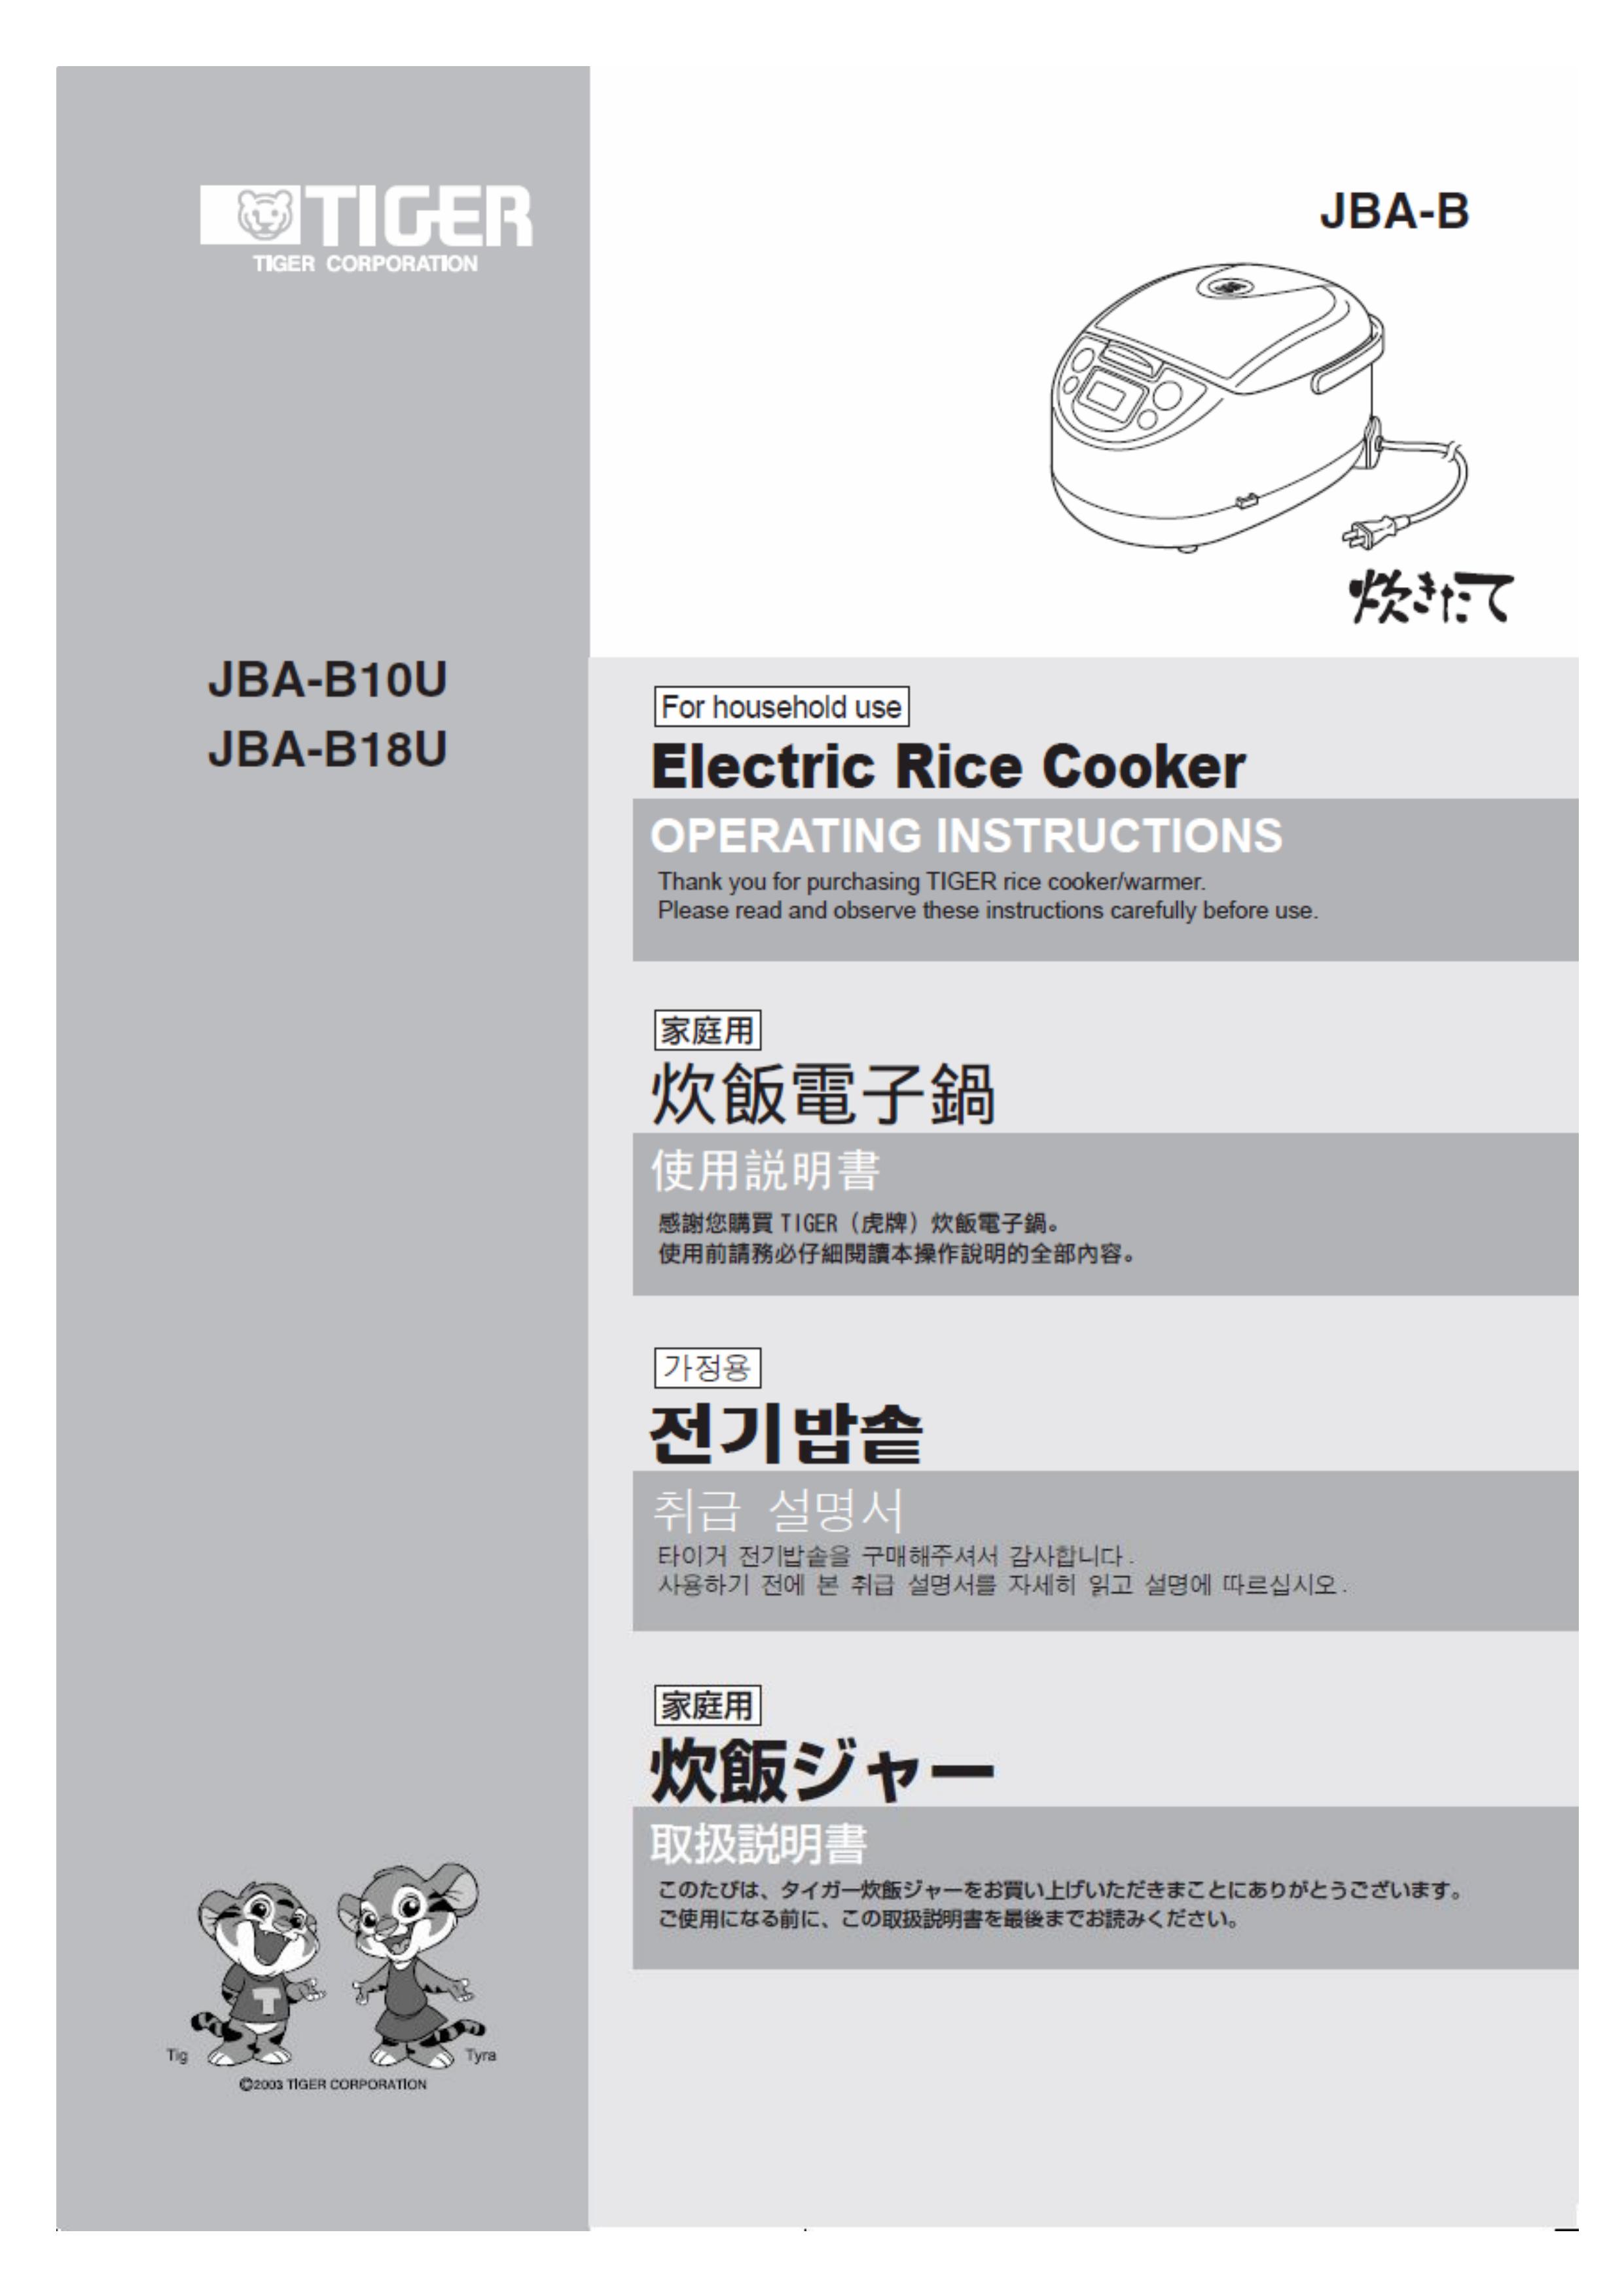 Tiger Products Co., Ltd JBA-B10U Rice Cooker User Manual